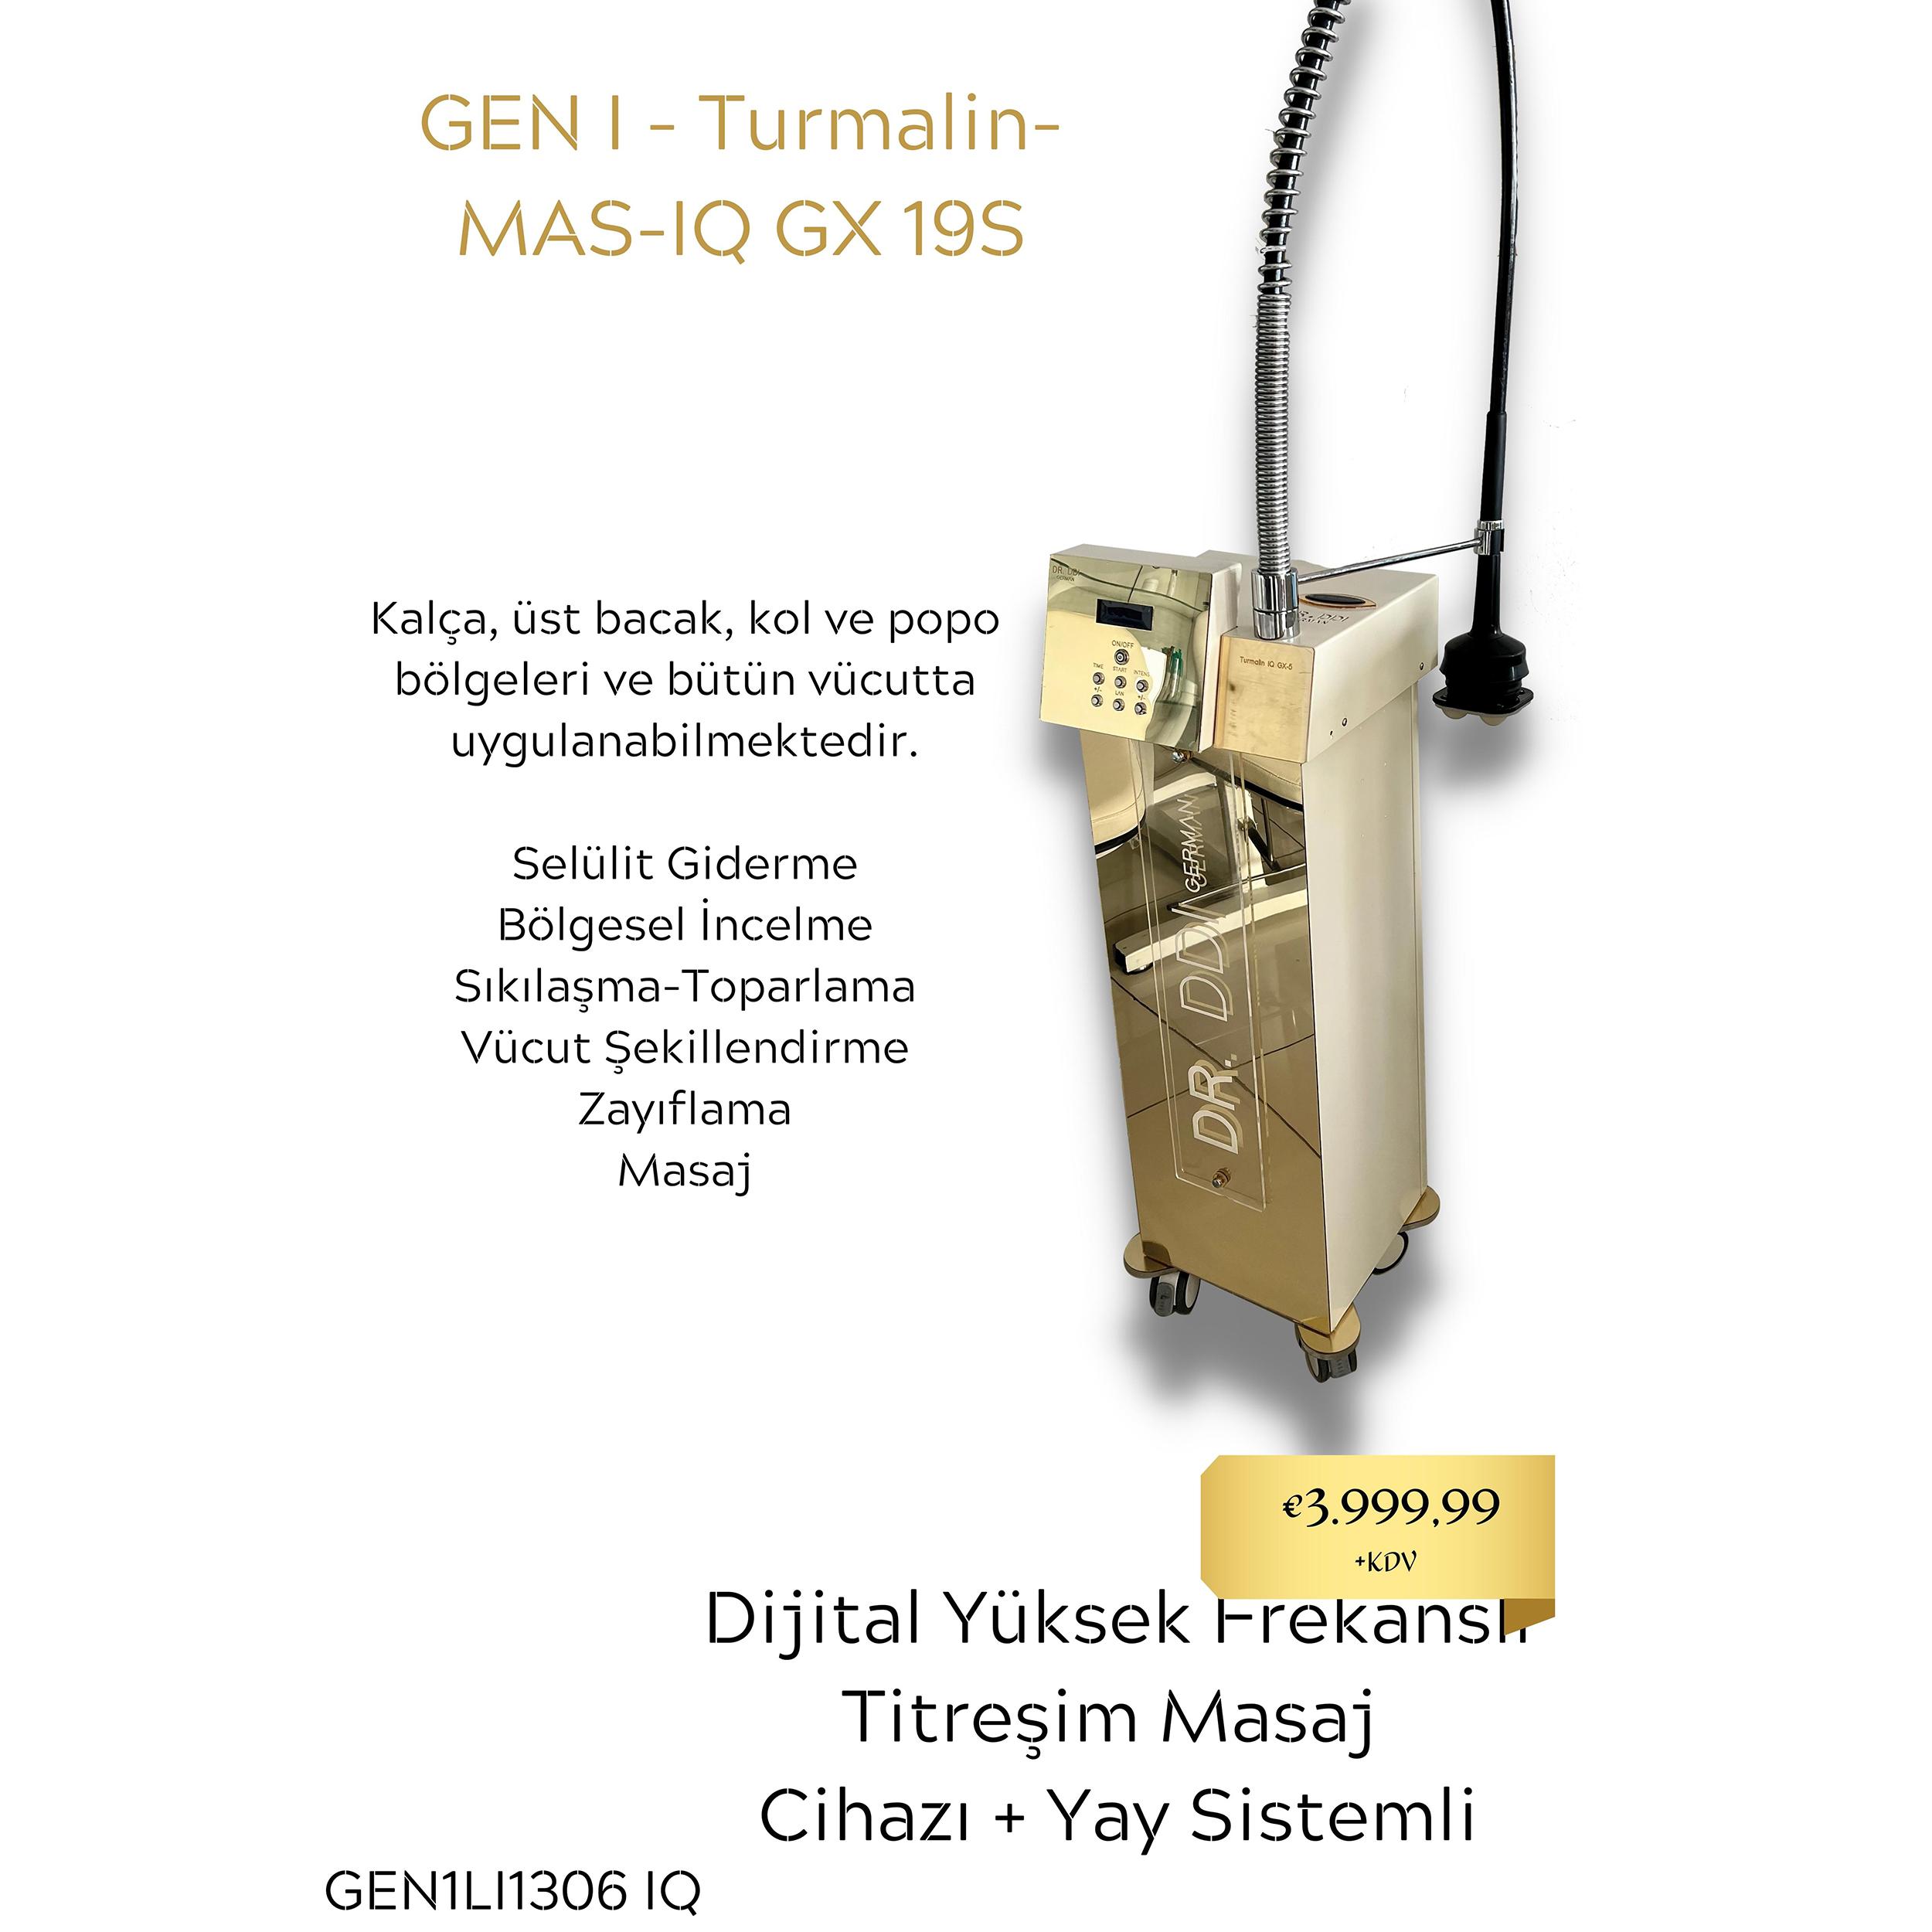 GEN I - Turmalin- MAS-IQ GX 19S